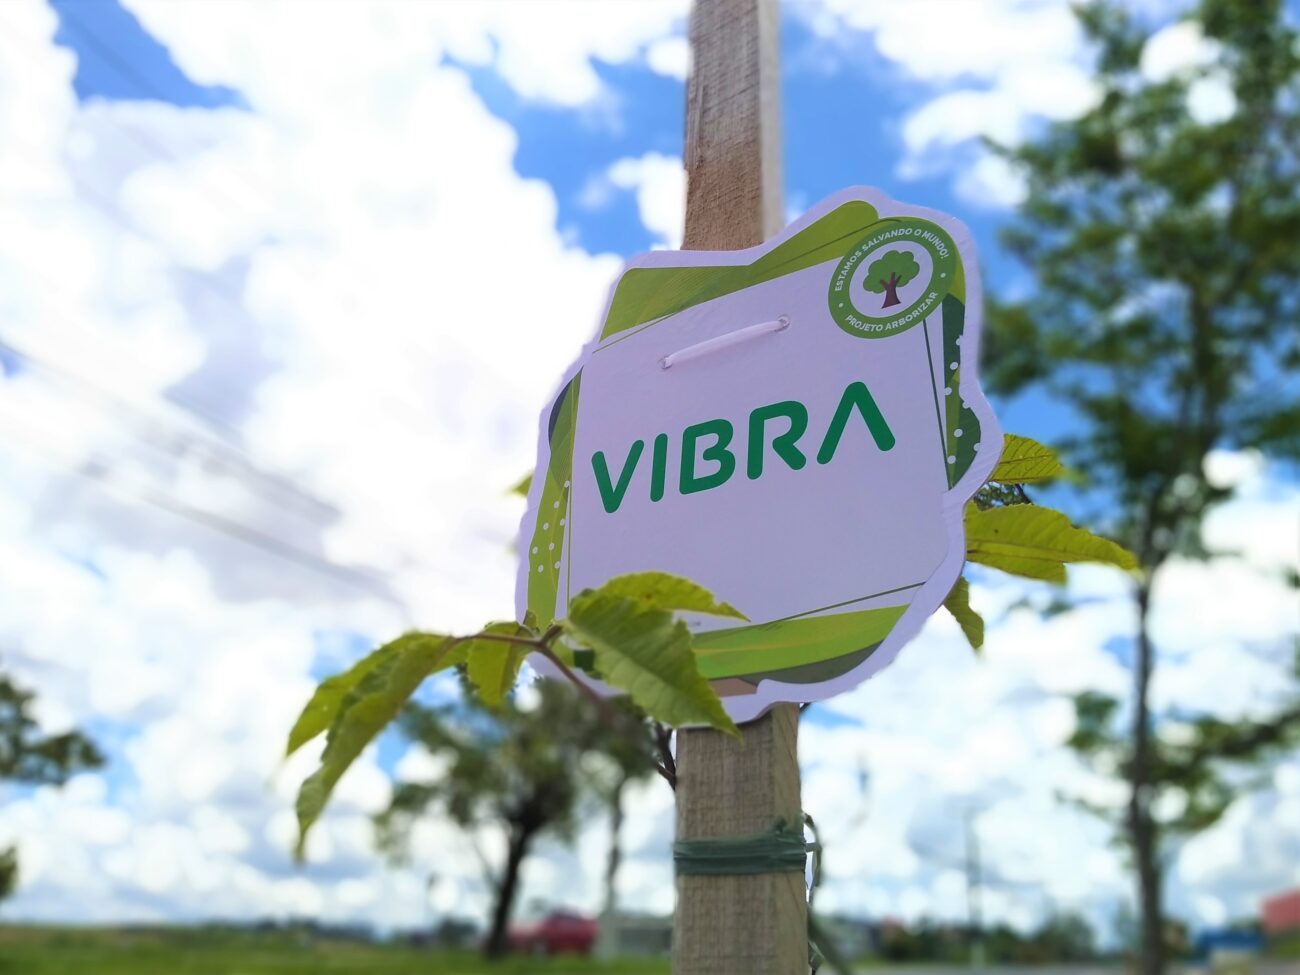 Foto da logo Vibra em uma placa de rua demonstrando apoio ao projeto arborizar